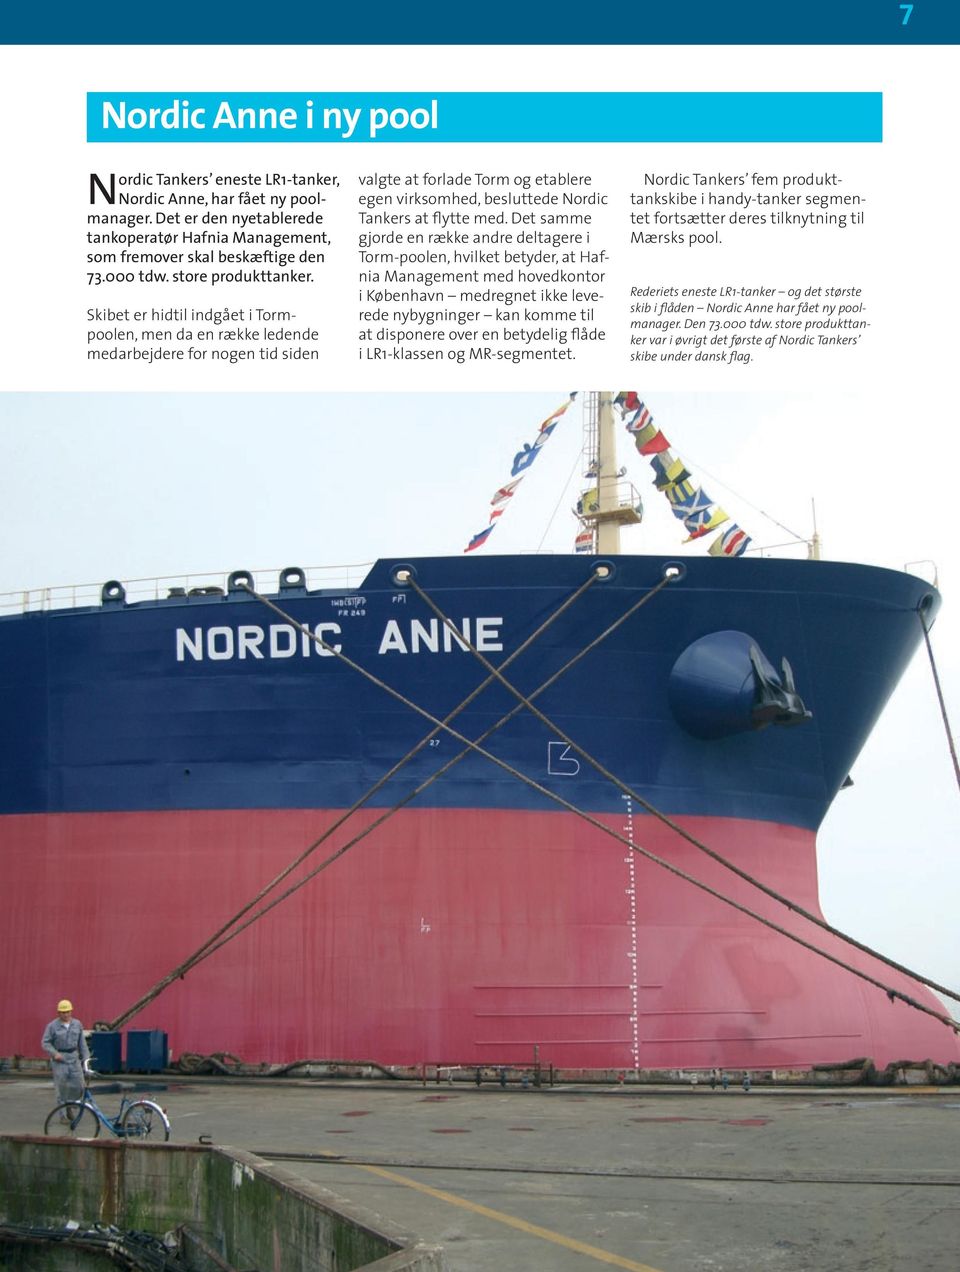 Skibet er hidtil indgået i Tormpoolen, men da en række ledende medarbejdere for nogen tid siden valgte at forlade Torm og etablere egen virksomhed, besluttede Nordic Tankers at flytte med.